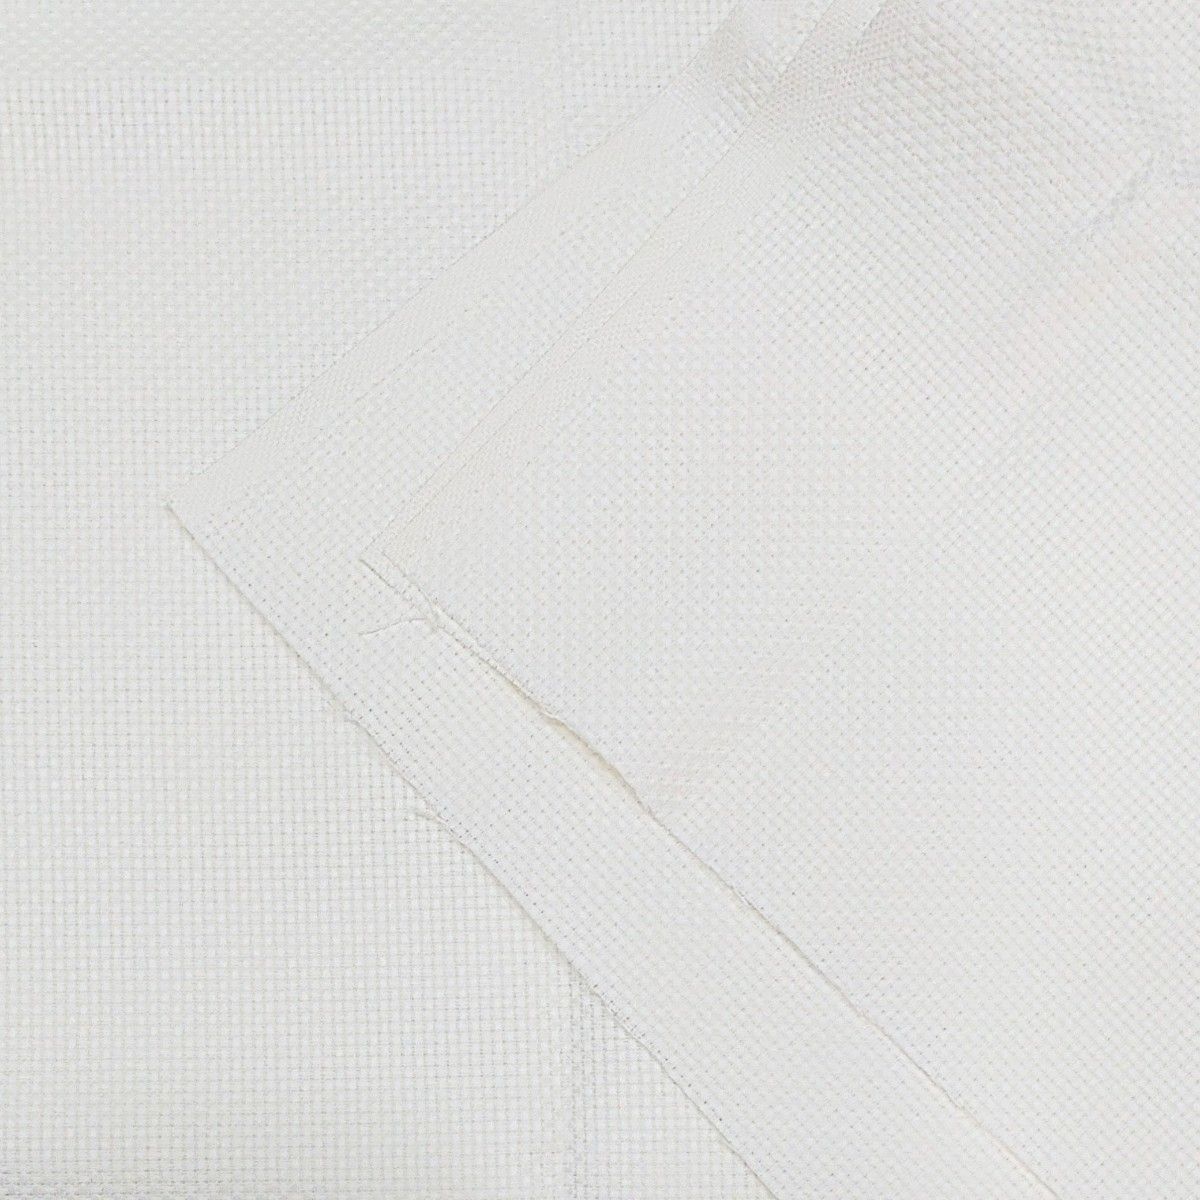 クロスステッチ布《90×100cm 13ct》オフホワイト 刺繍布